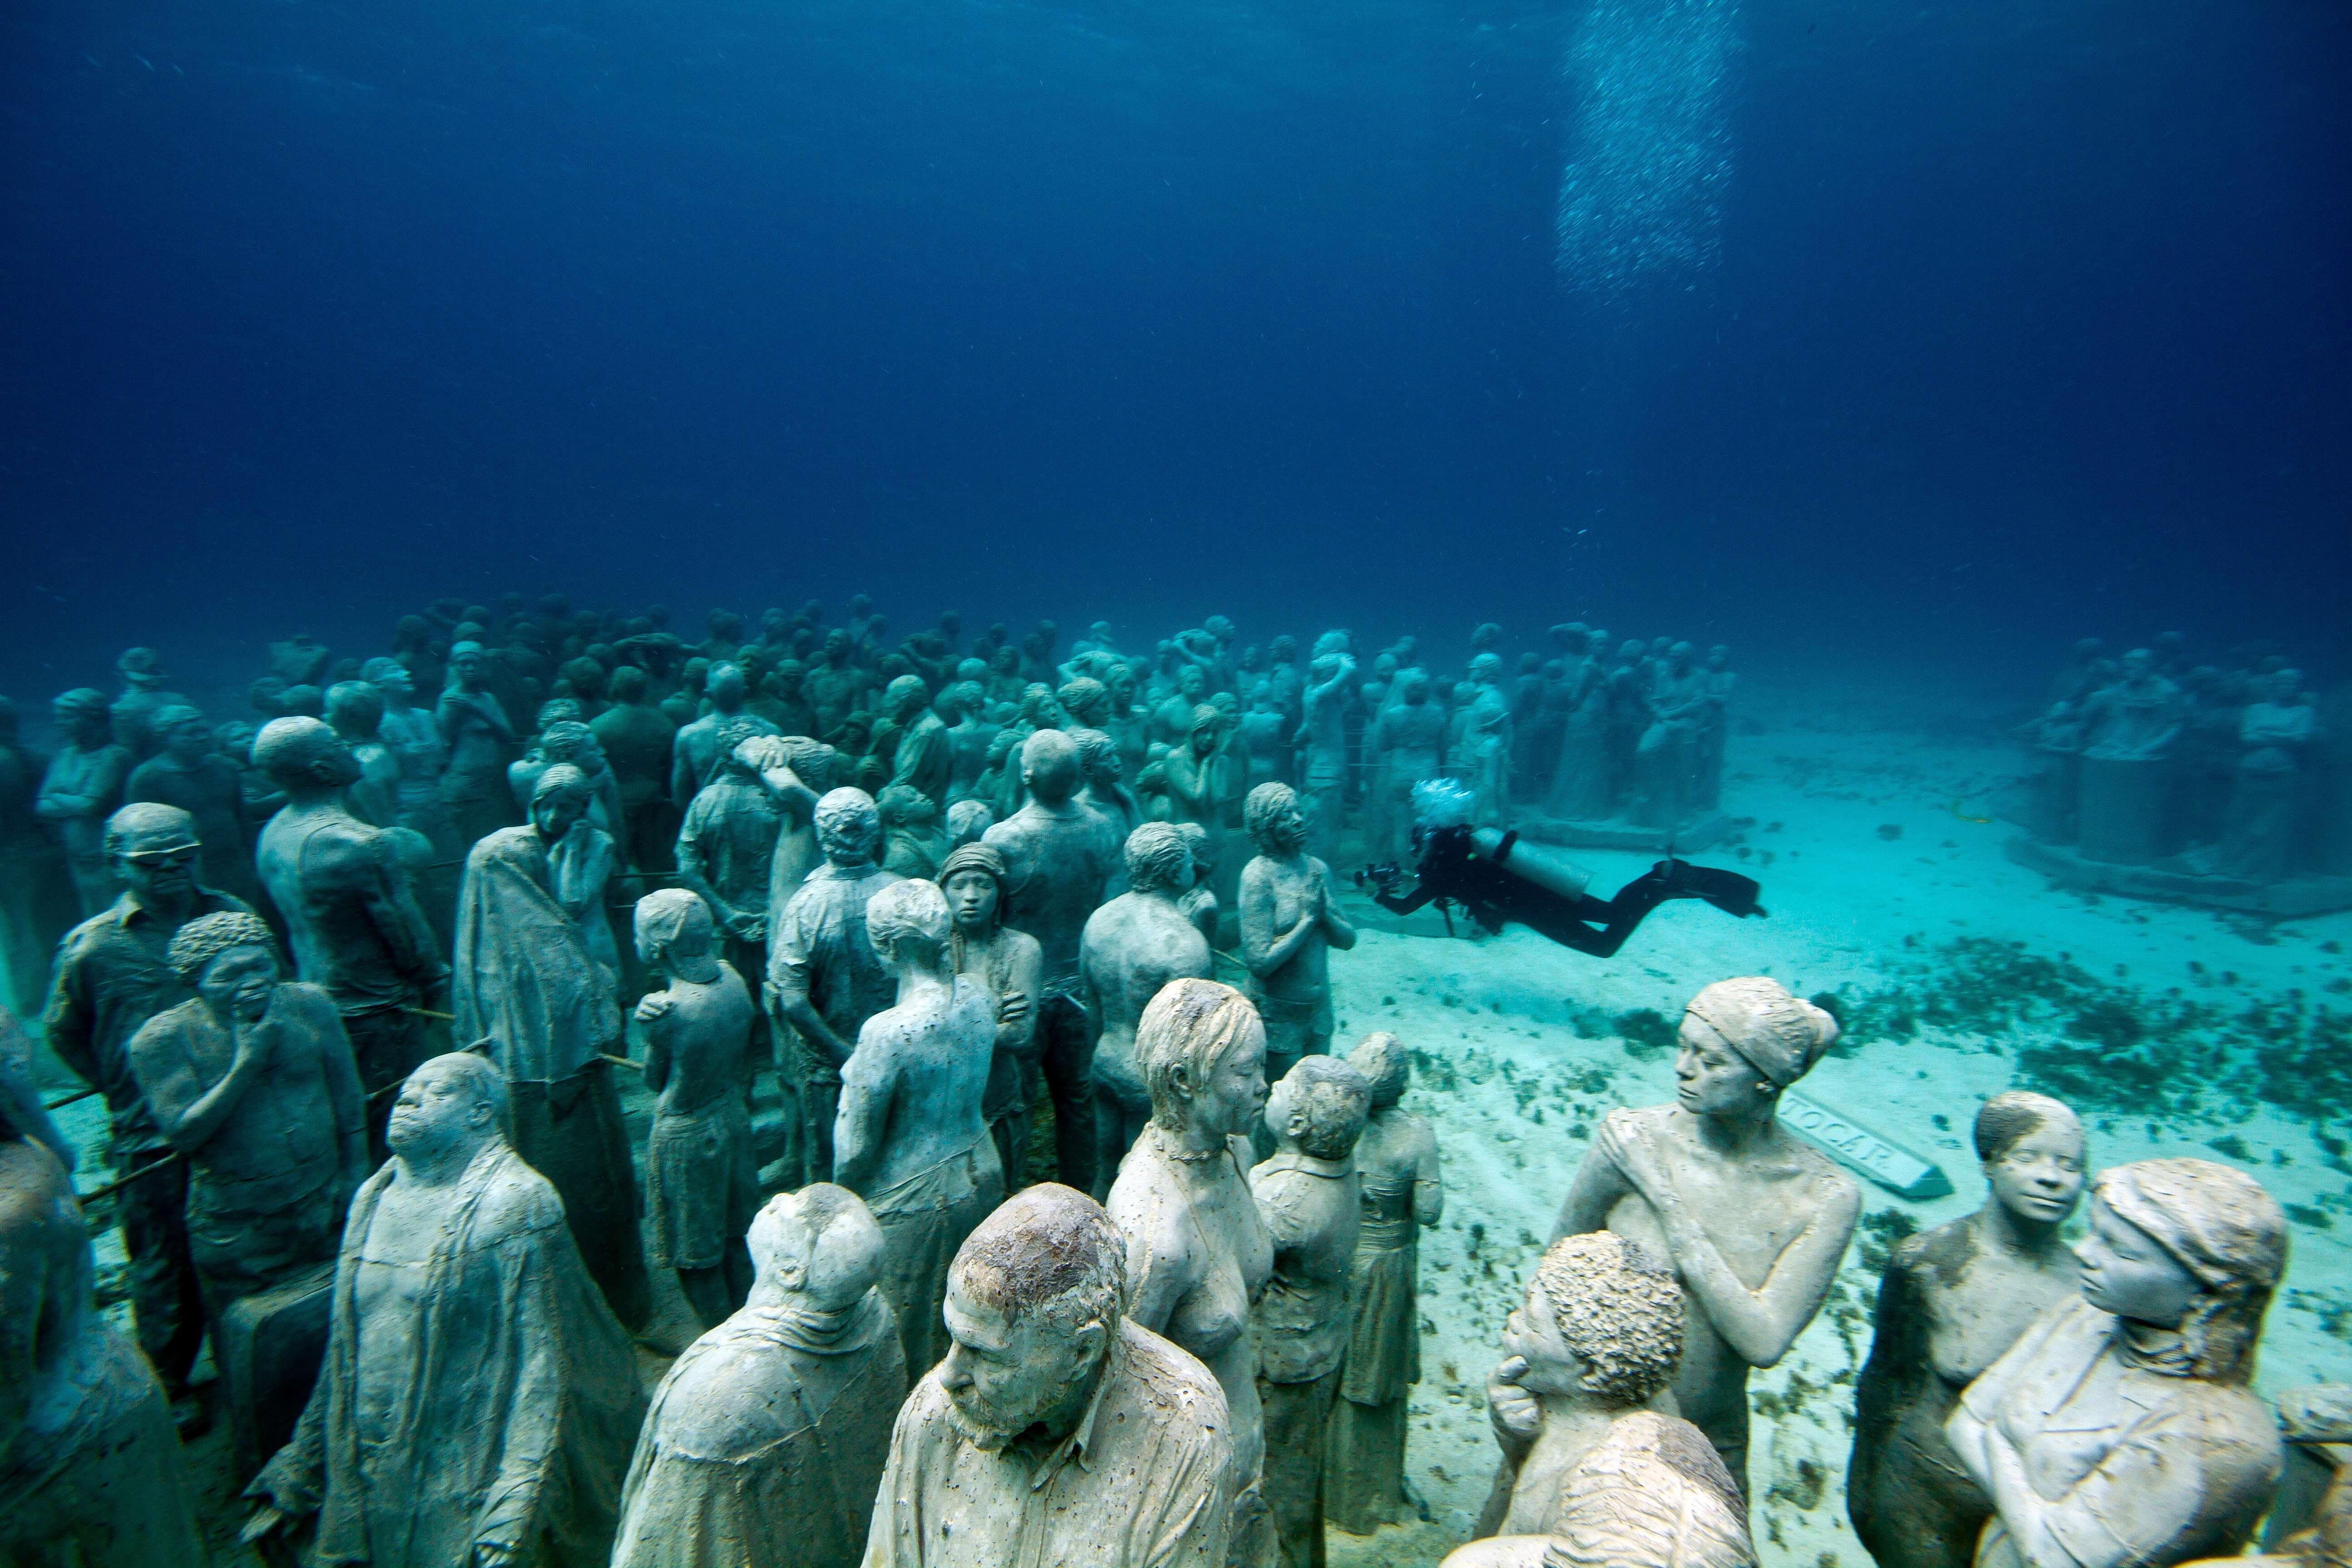 Где на дне океана. Канкун Мексика подводный музей. Канкун музей подводных скульптур. Музей подводных скульптур, Канкун, Мексика. Подводный музей скульптур в Канкуне.